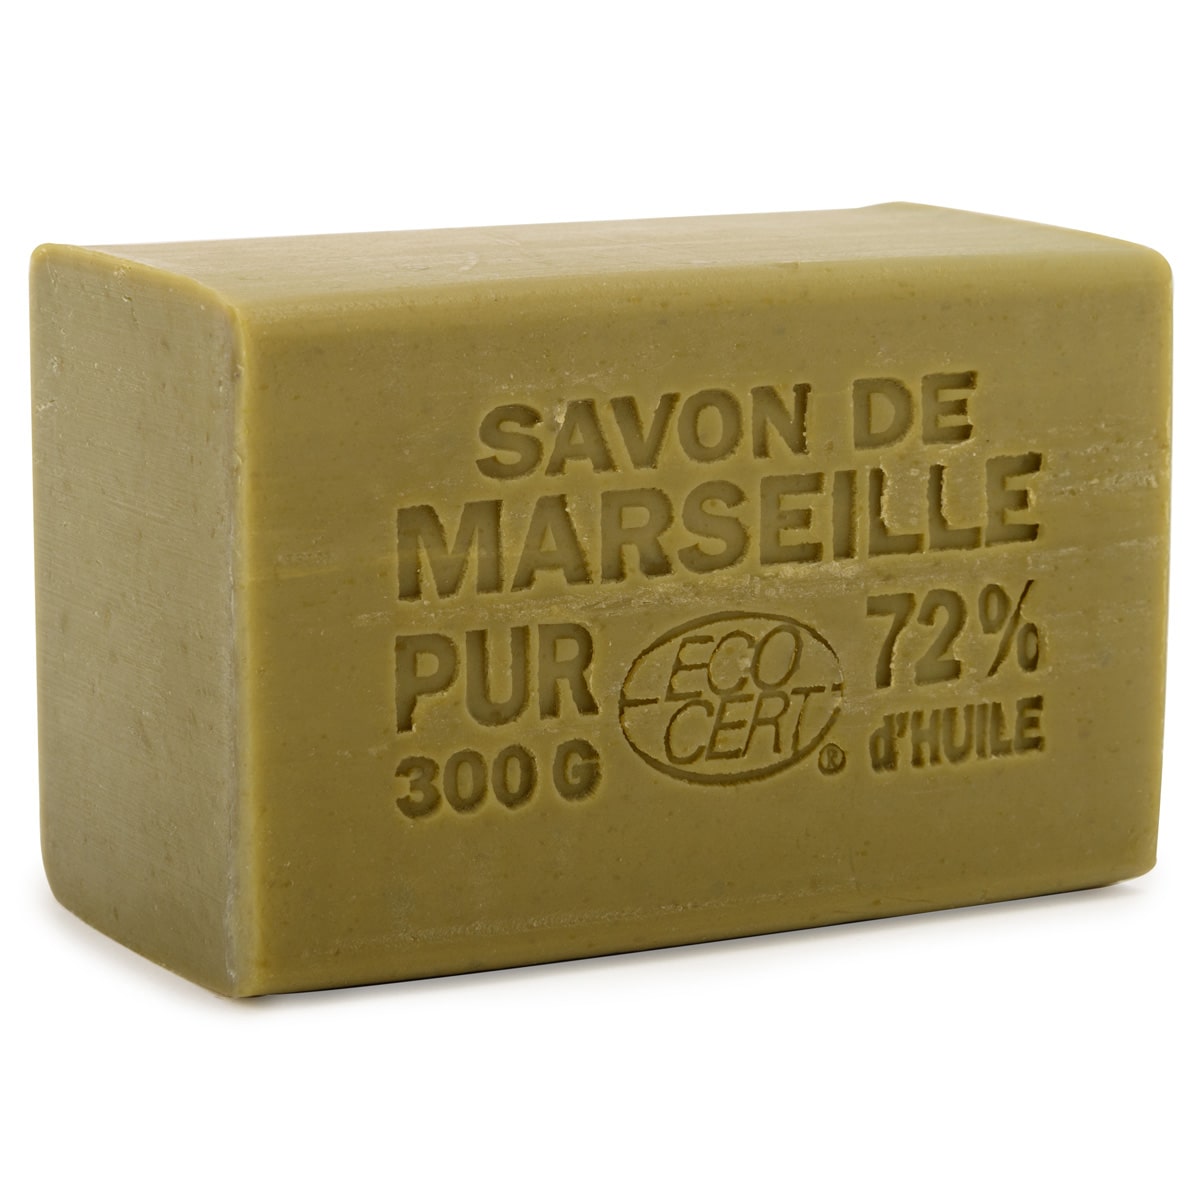 Pain de savon de Marseille à l'huile d'olive 300g - Cosmos Natural